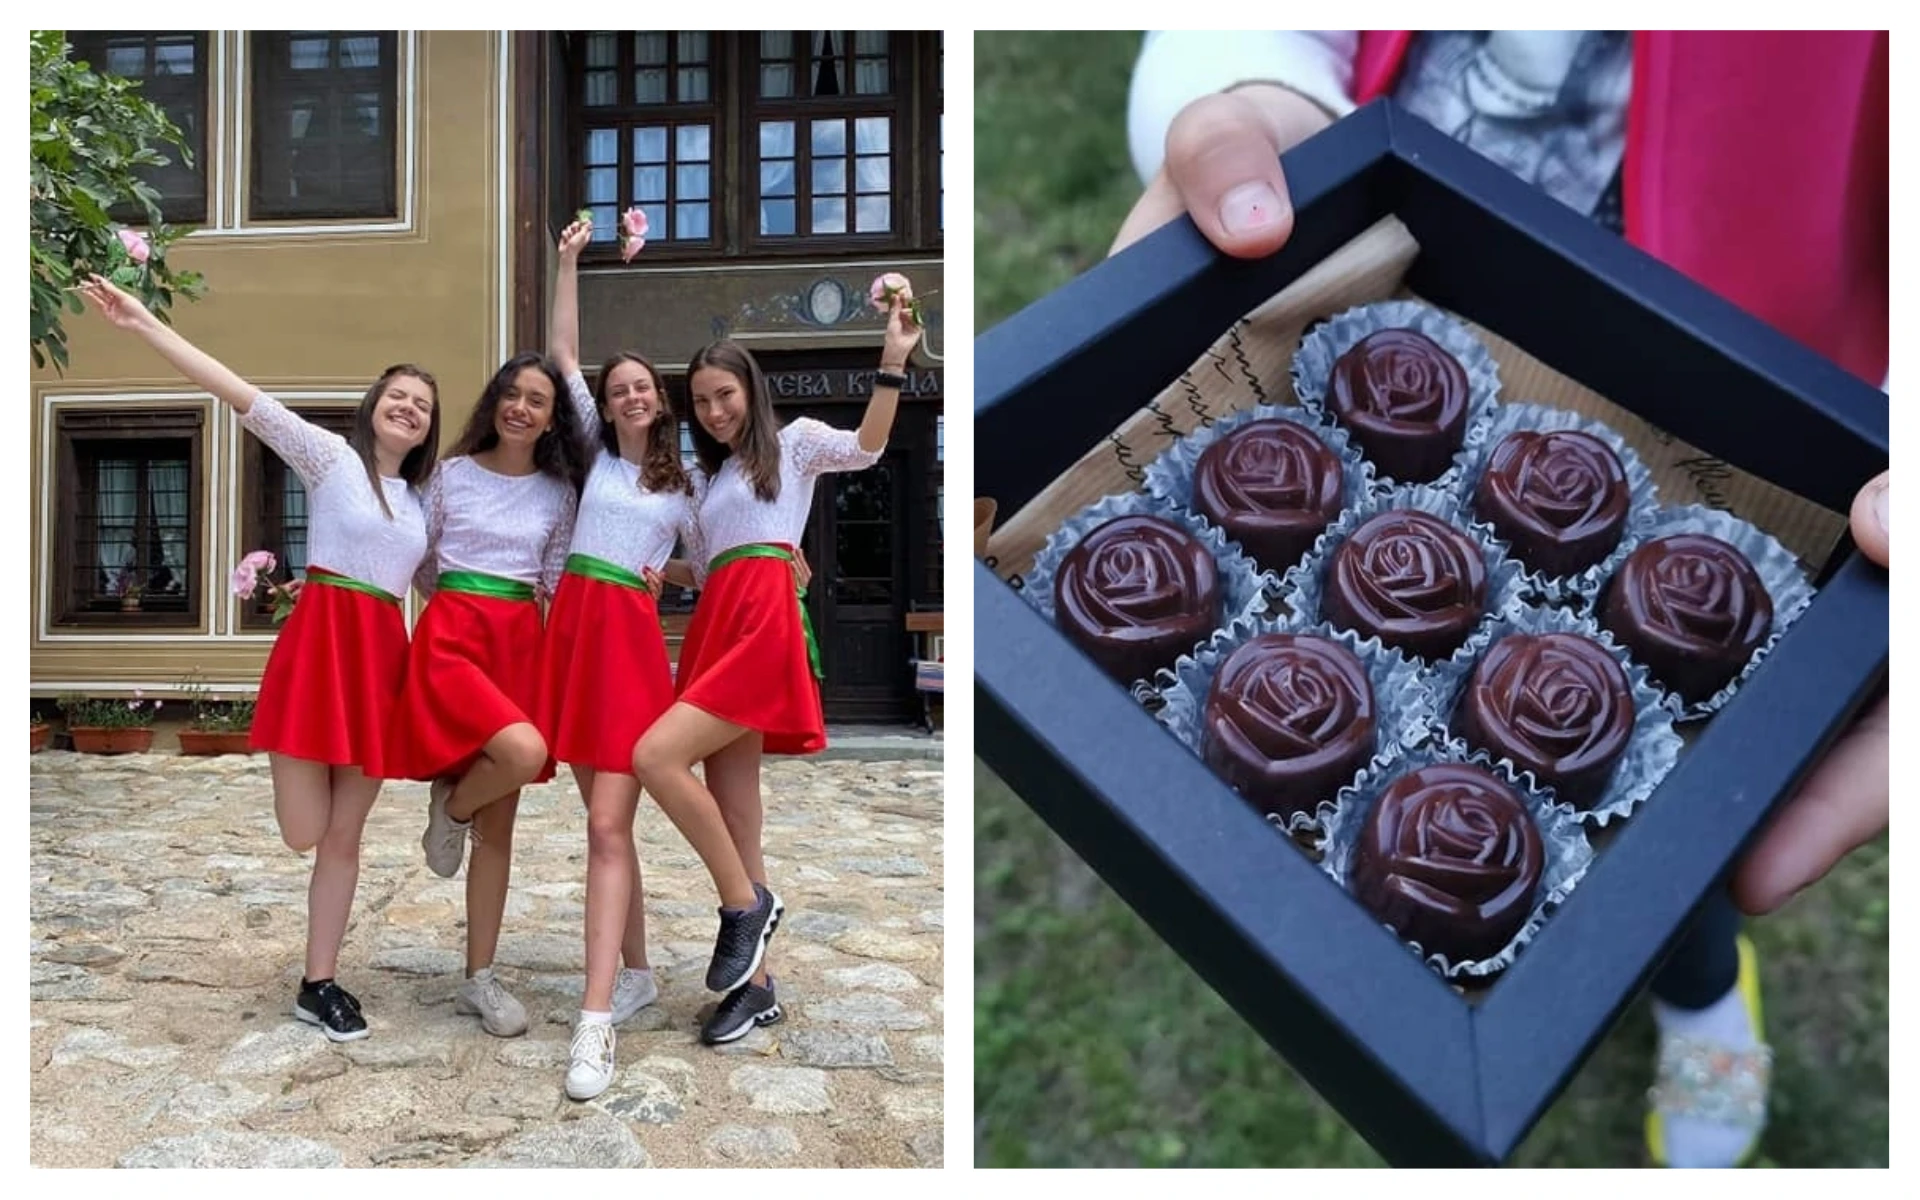 Пет момичета от Карлово отглеждат 4 дка рози и правят здравословни шоколадови бонбони (ВИДЕО)